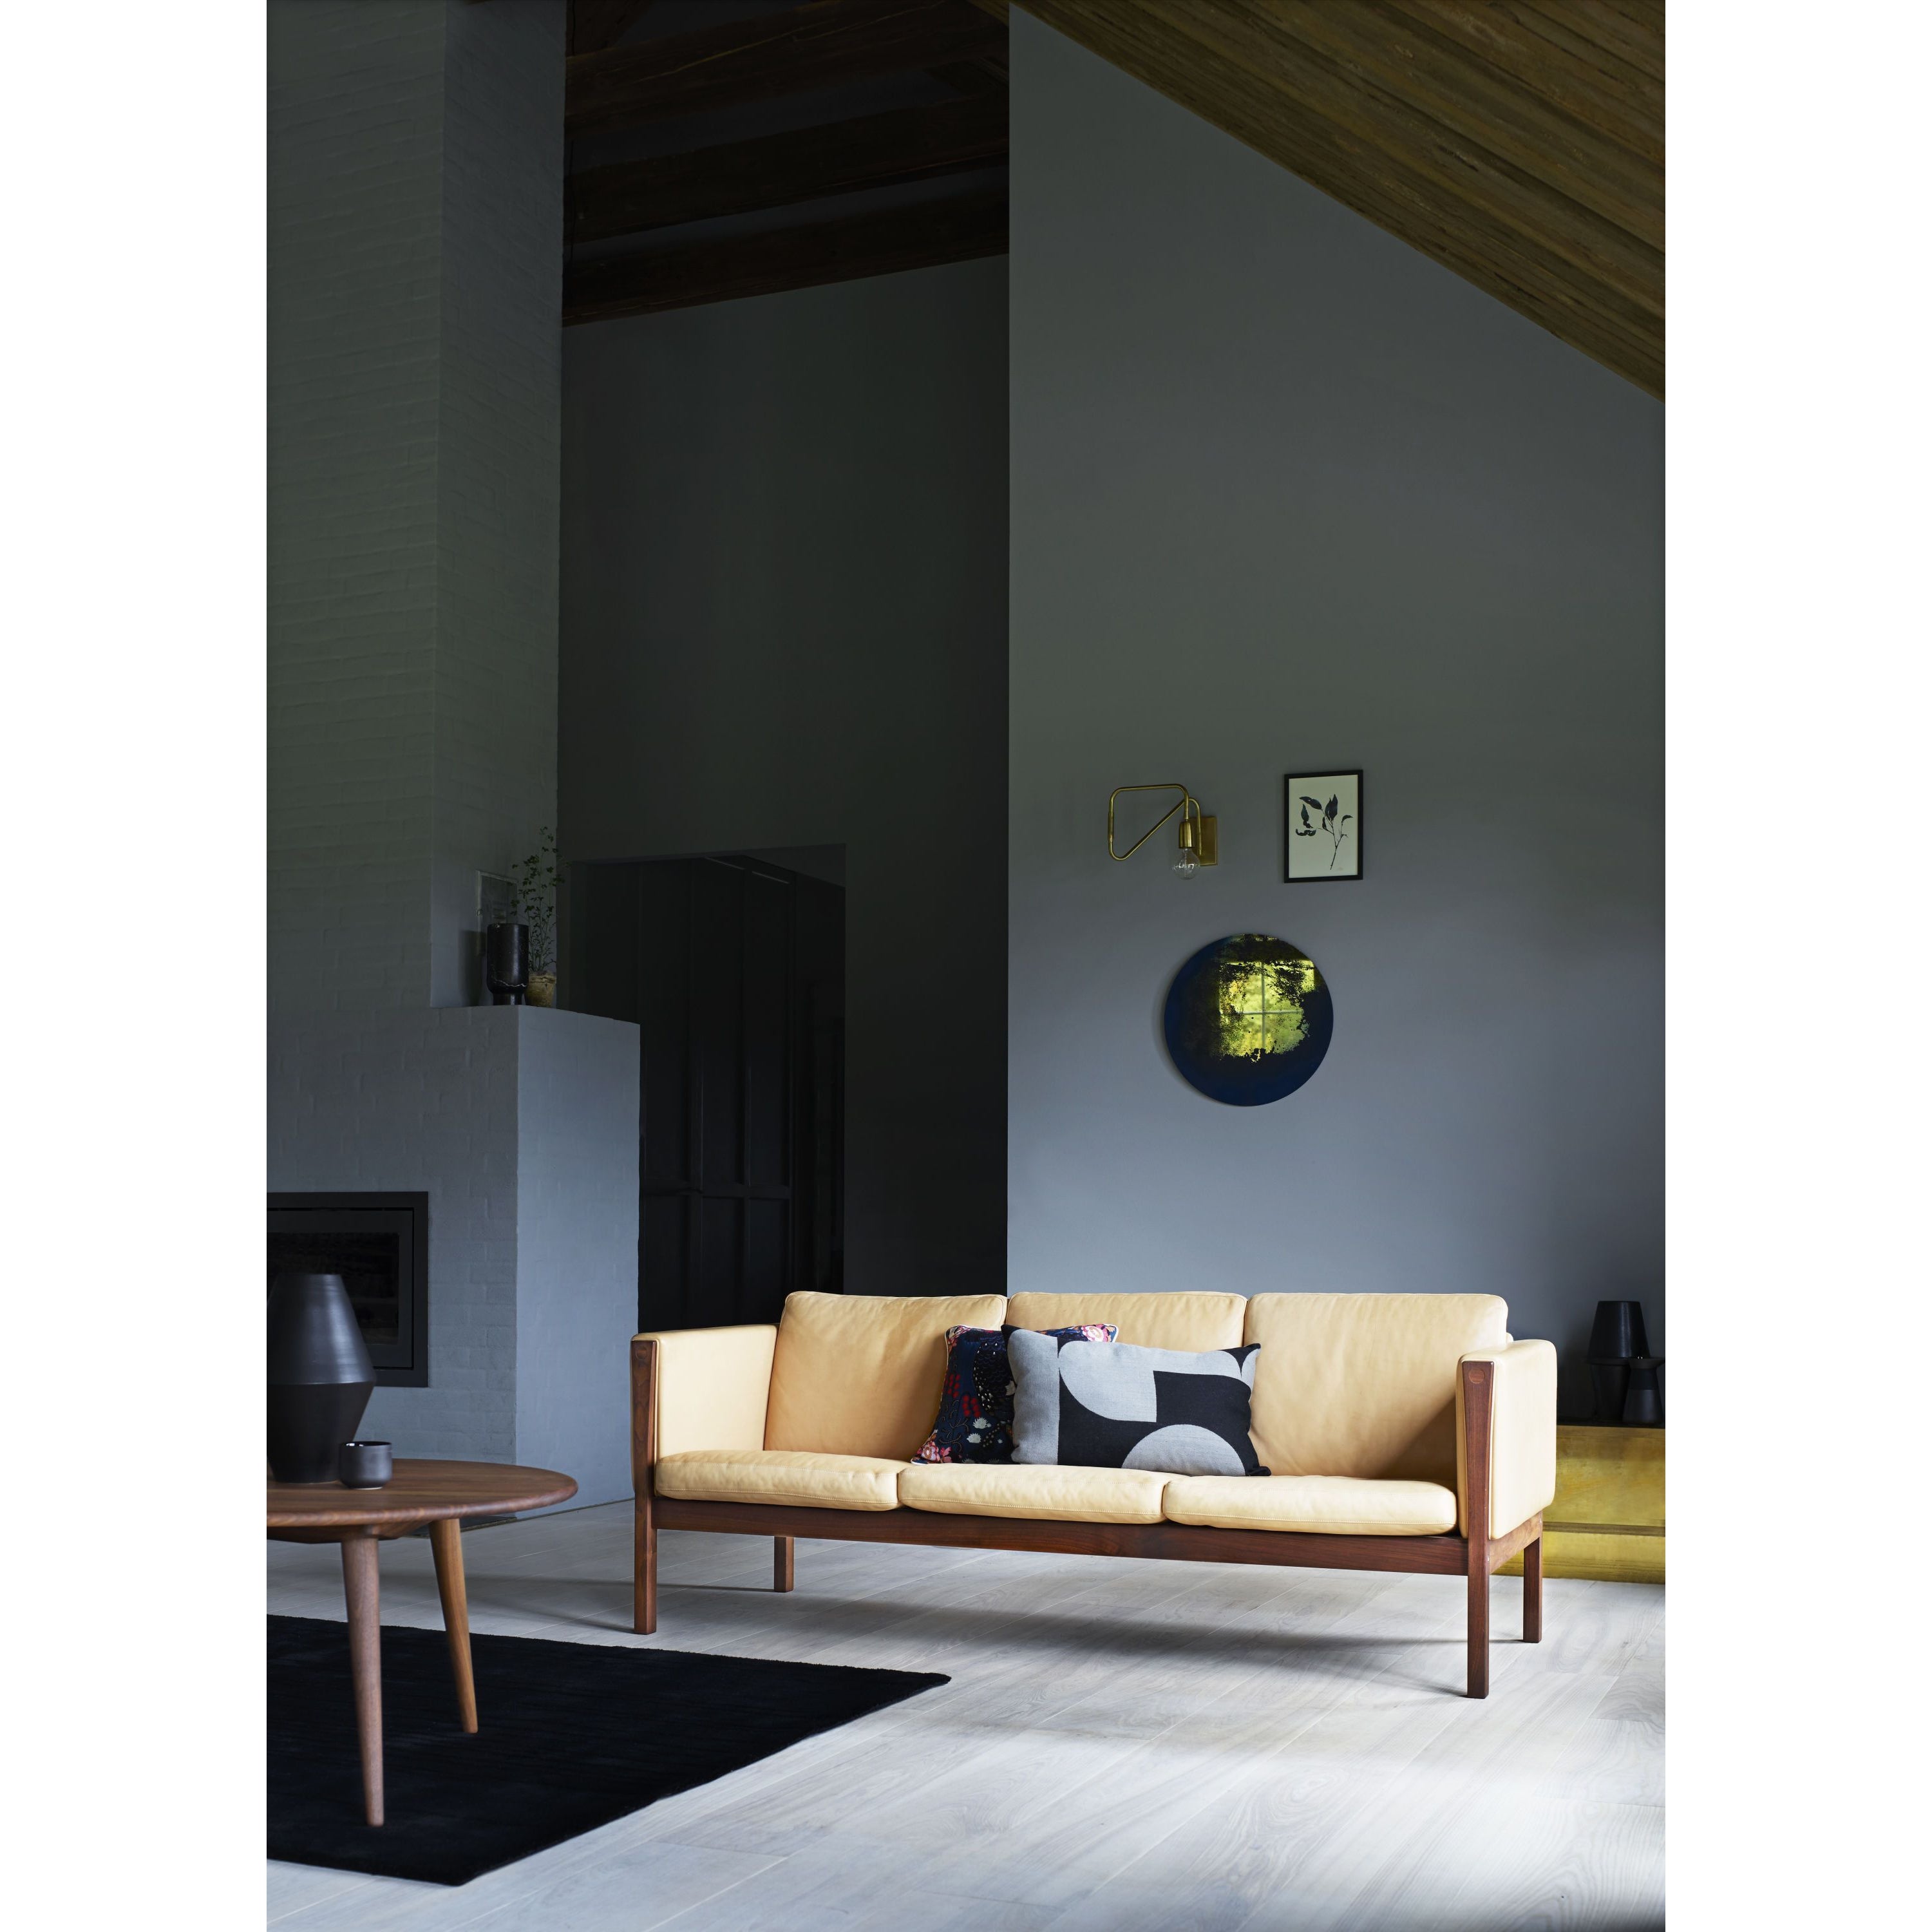 Carl Hansen CH163 divano, quercia oliata/pelle nera